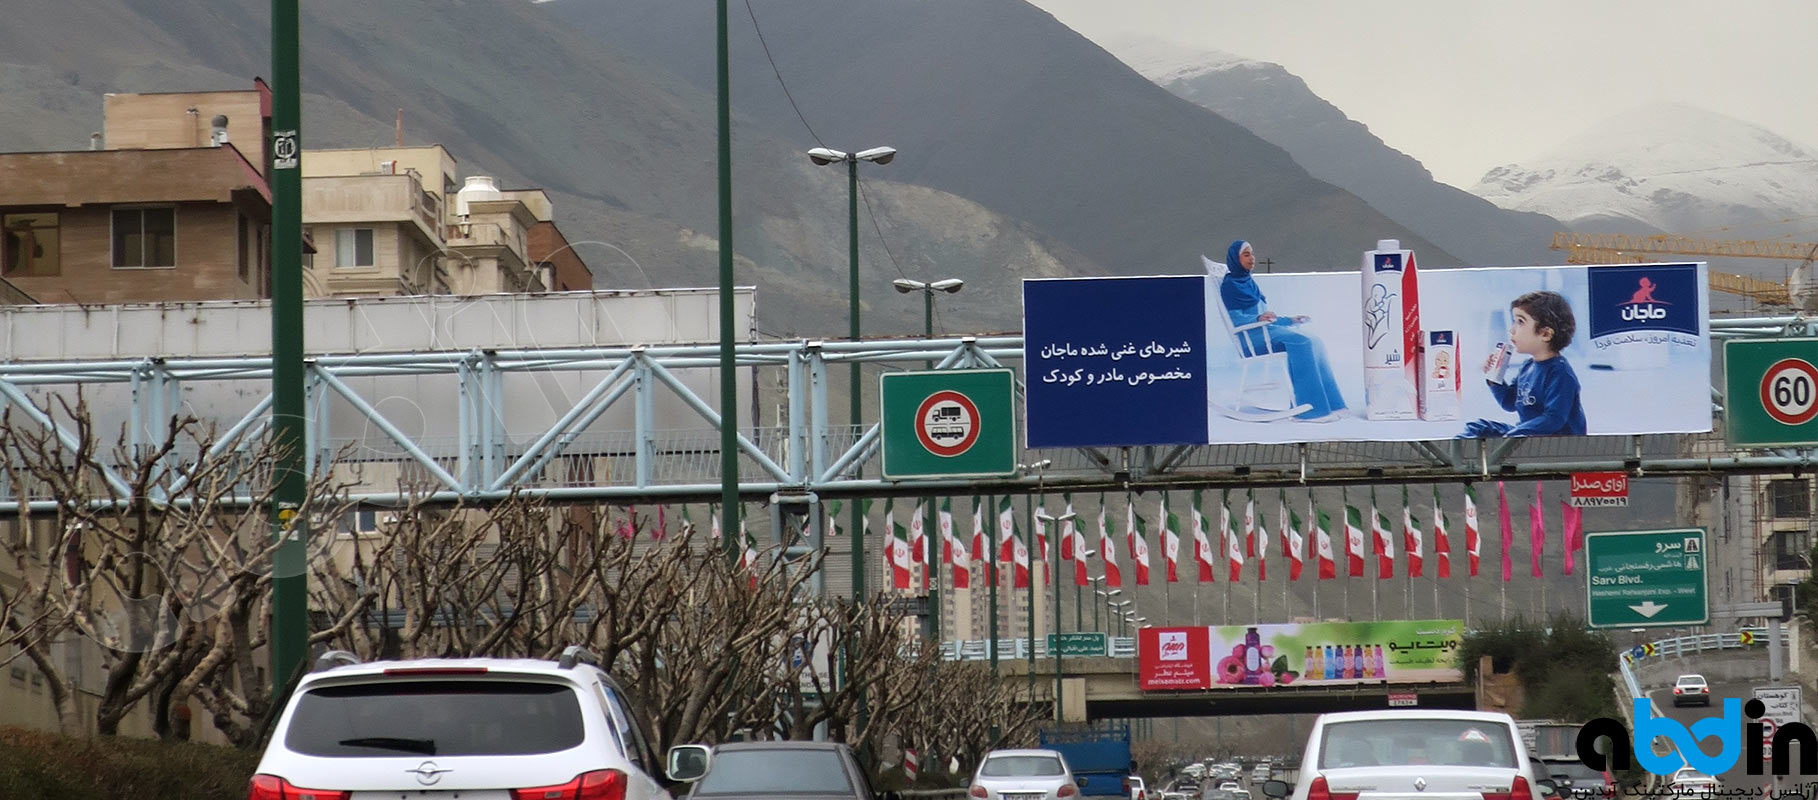 بیلبورد یادگار امام شمال نرسیده به خروجی هاشمی رفسنجانی